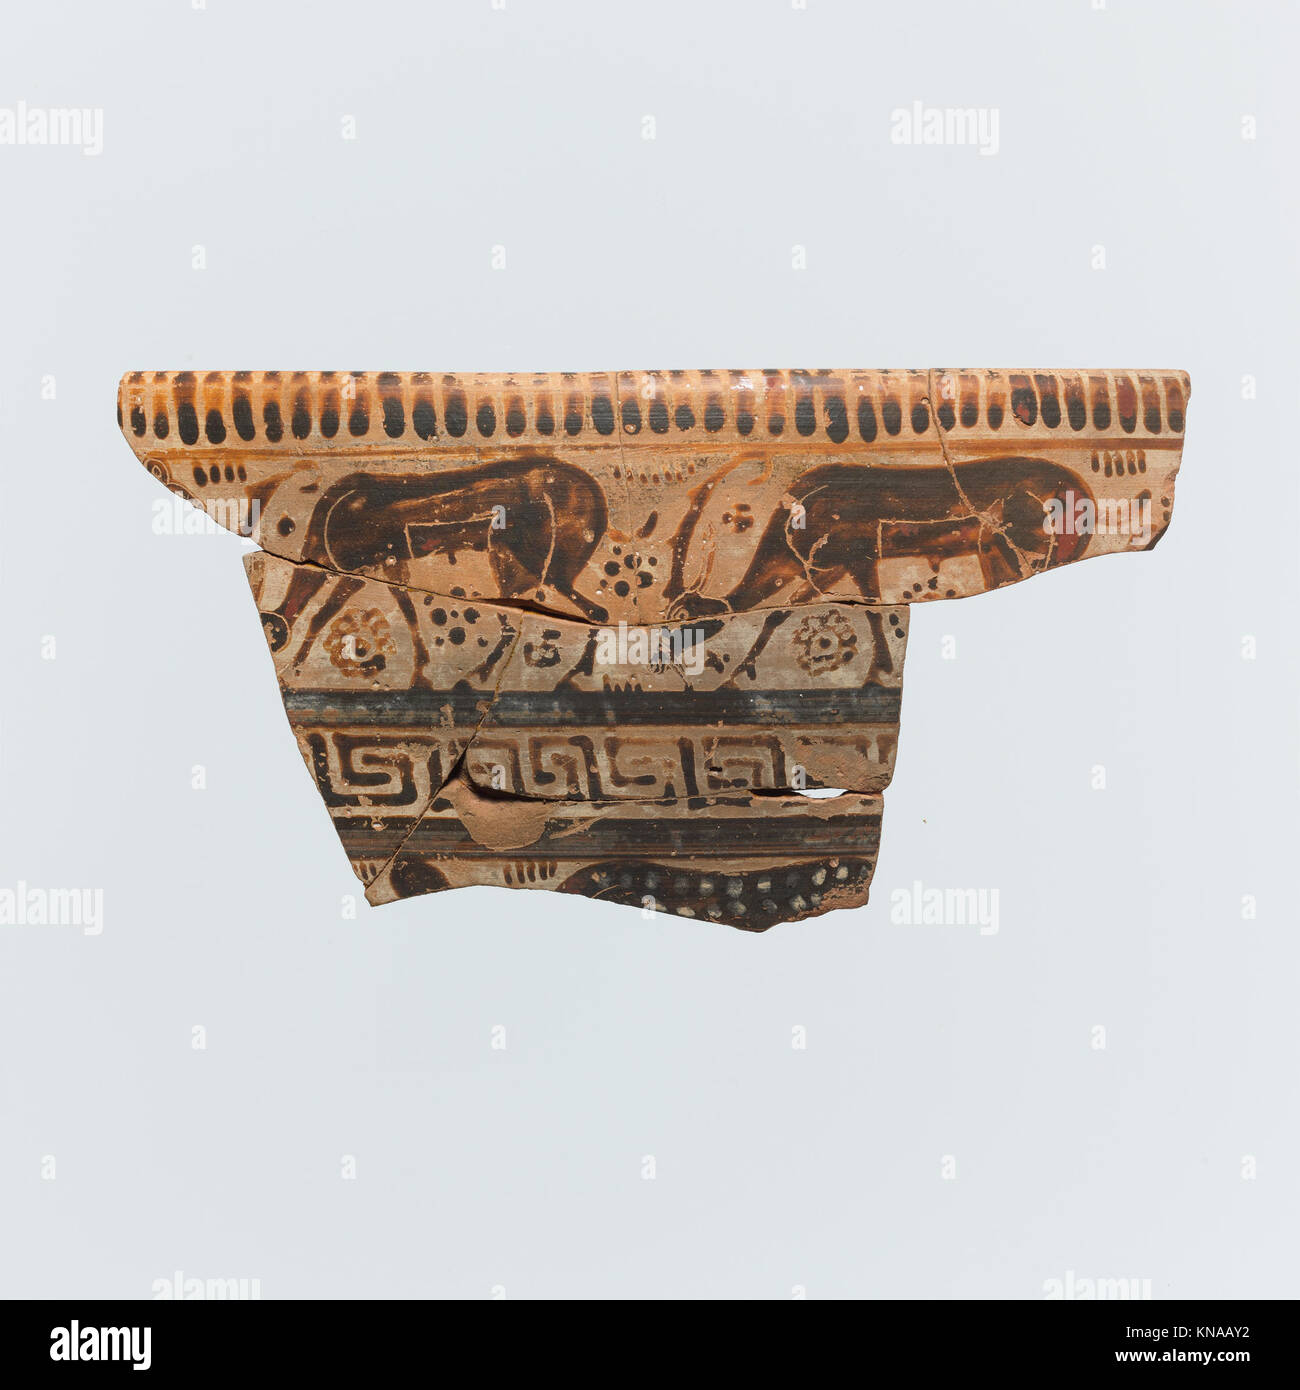 Fragment eines Terrakotta-Kraters (Rührschüssel) MET DP114746 254834 Ostgriechisch, Fragment eines Terrakotta-Kraters (Rührschüssel), 6. Jahrhundert v. Chr., Terrakotta, 3 3/4 ? 7 1/4 ? 3/8 Zoll (9.6 ? 18.4 ? 0.9 cm). Das Metropolitan Museum of Art, New York. Erworben im Austausch vom University Museum, Philadelphia, 1955 (55.71.9) Stockfoto